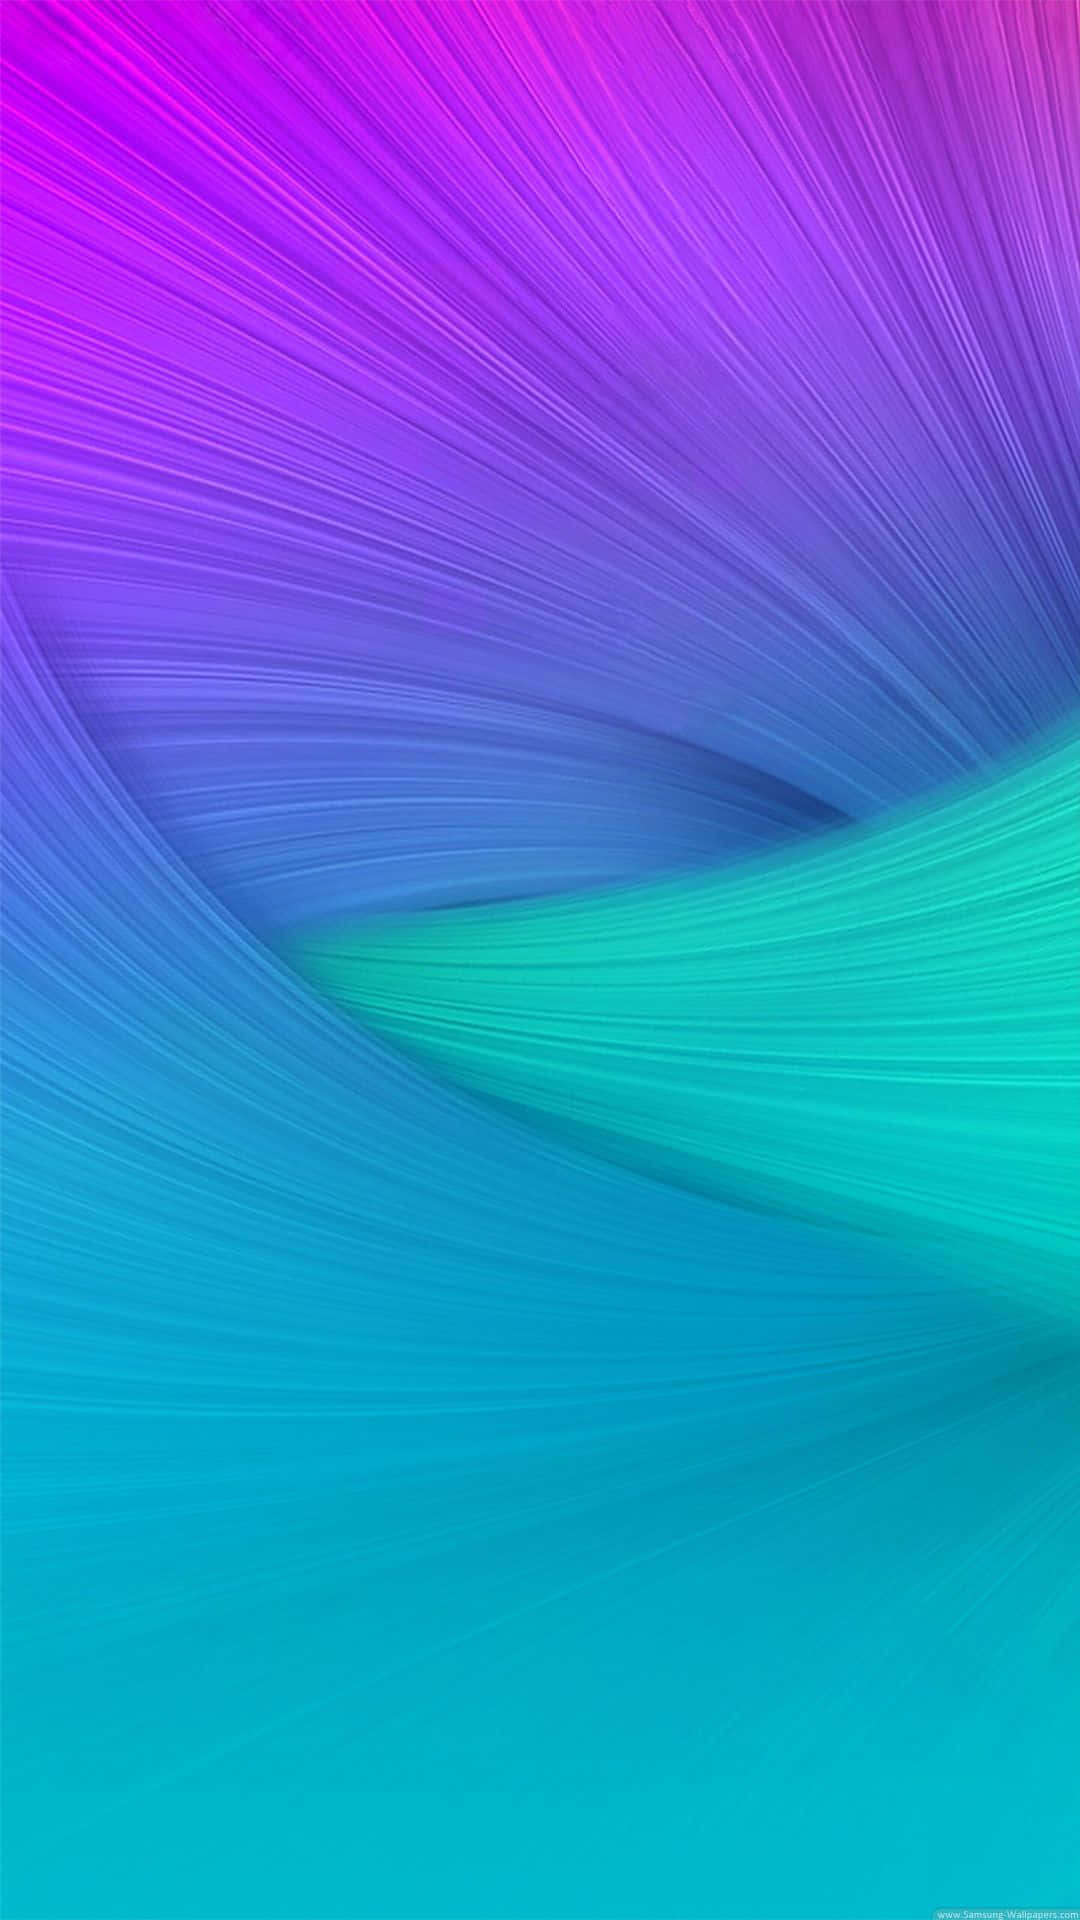 Greenish Purple Galaxy Note 4 Wallpaper